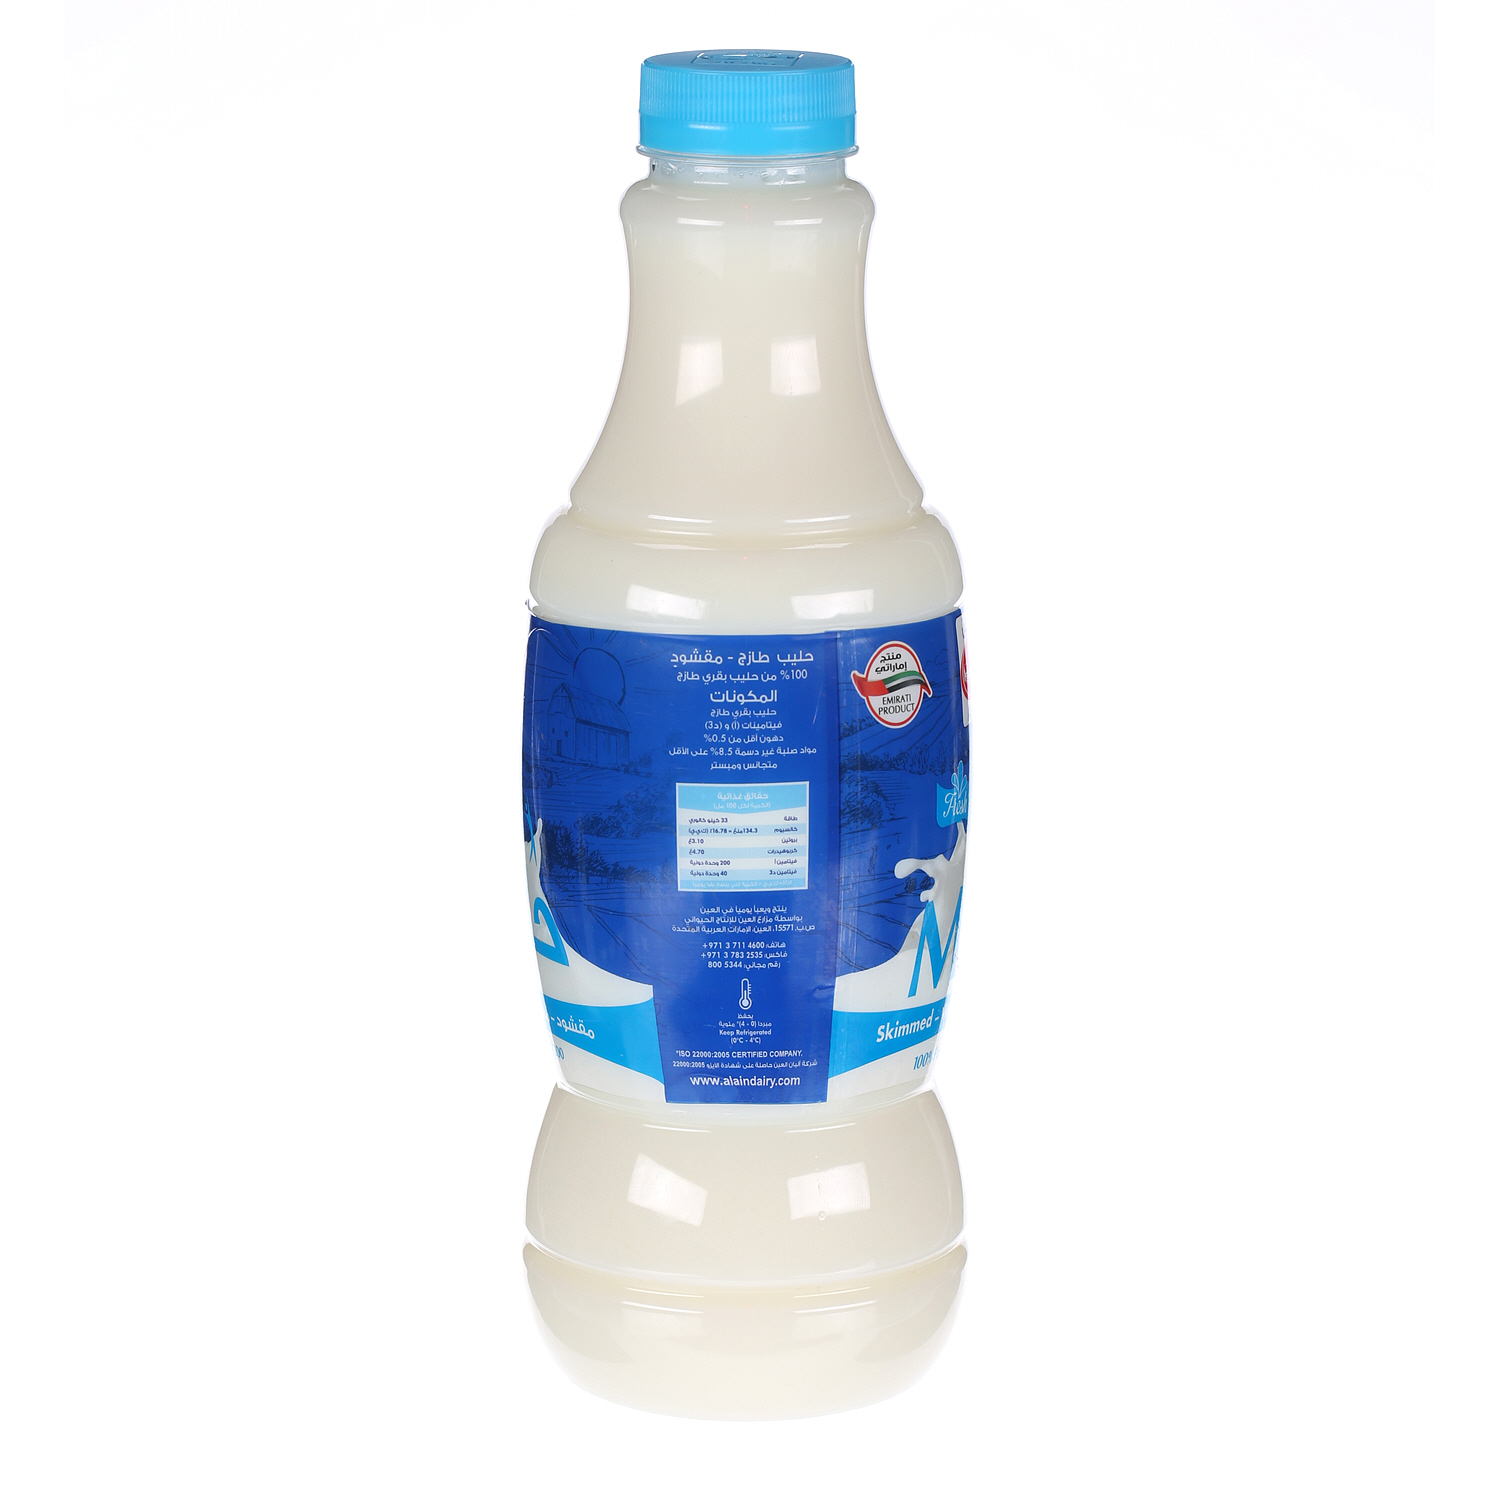 Al Ain Fresh Milk Skimmed 1 L